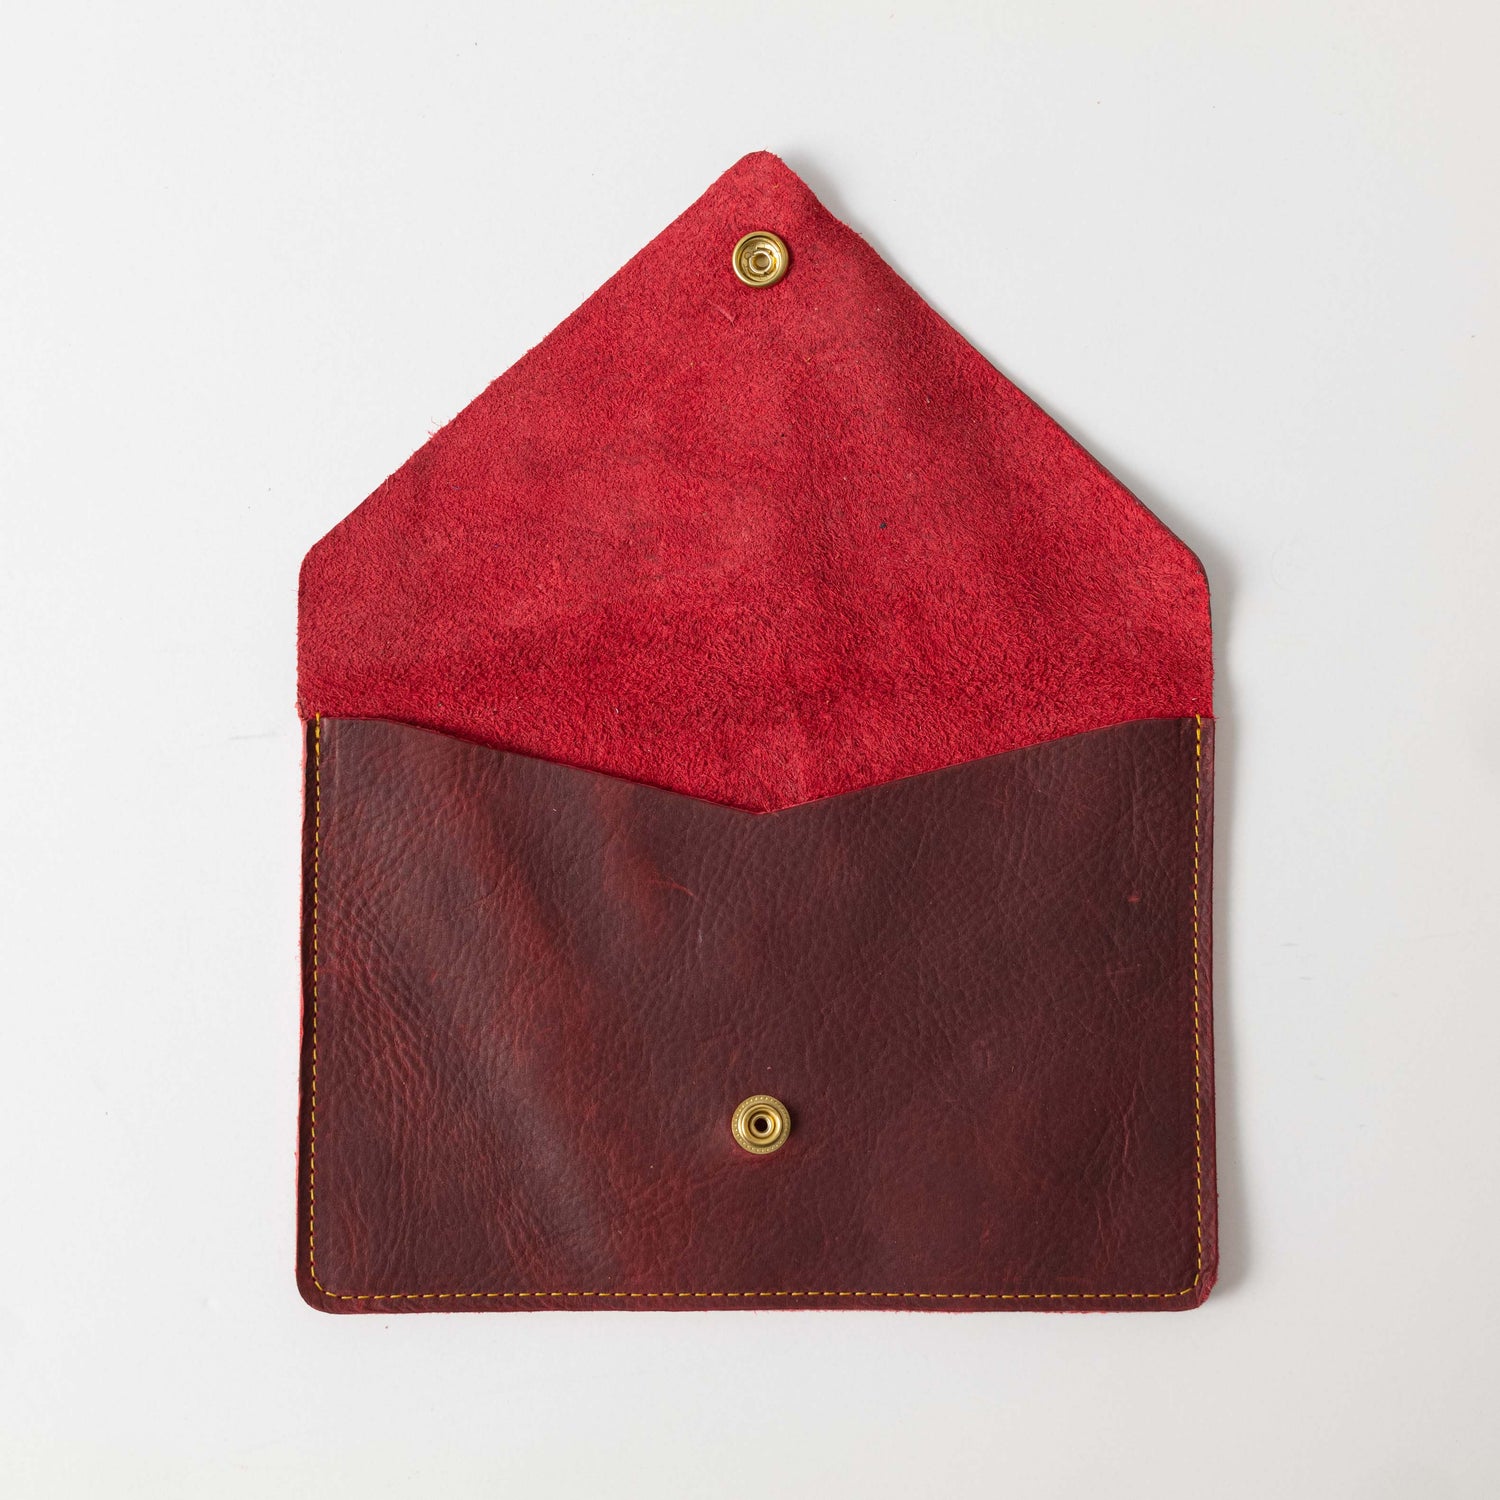 Red Kodiak Leather Clutch